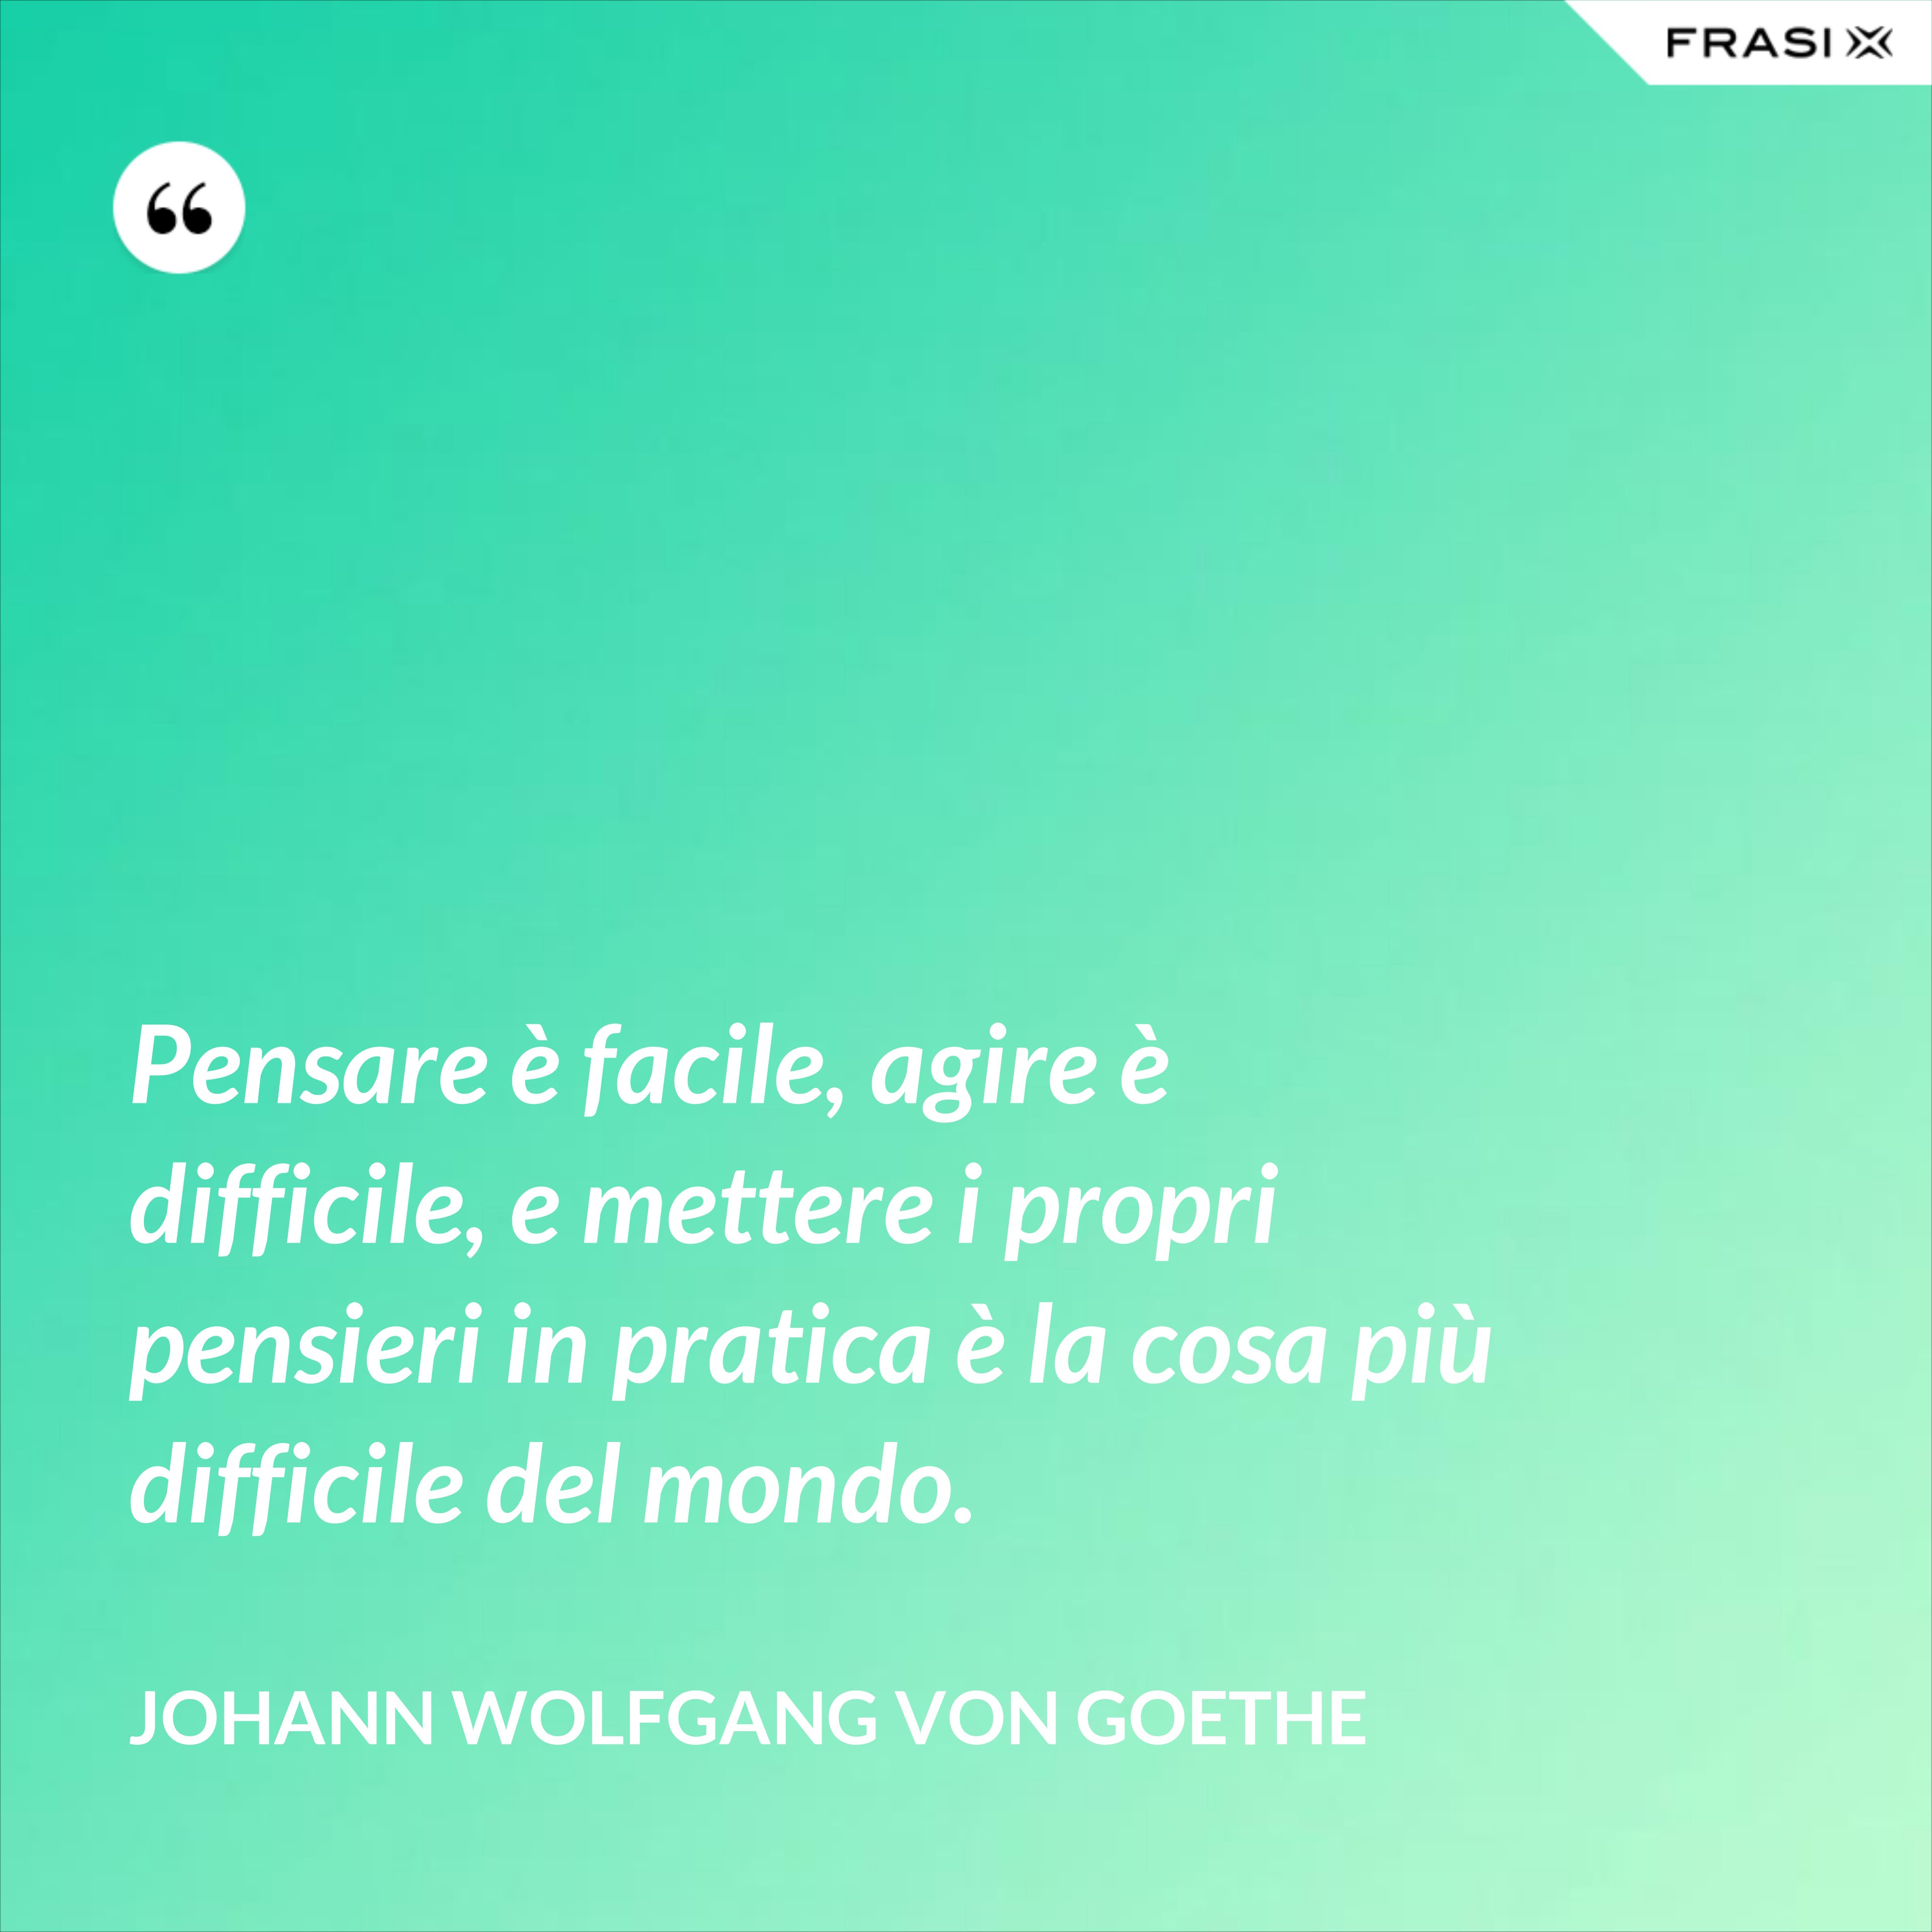 Pensare è facile, agire è difficile, e mettere i propri pensieri in pratica è la cosa più difficile del mondo. - Johann Wolfgang von Goethe